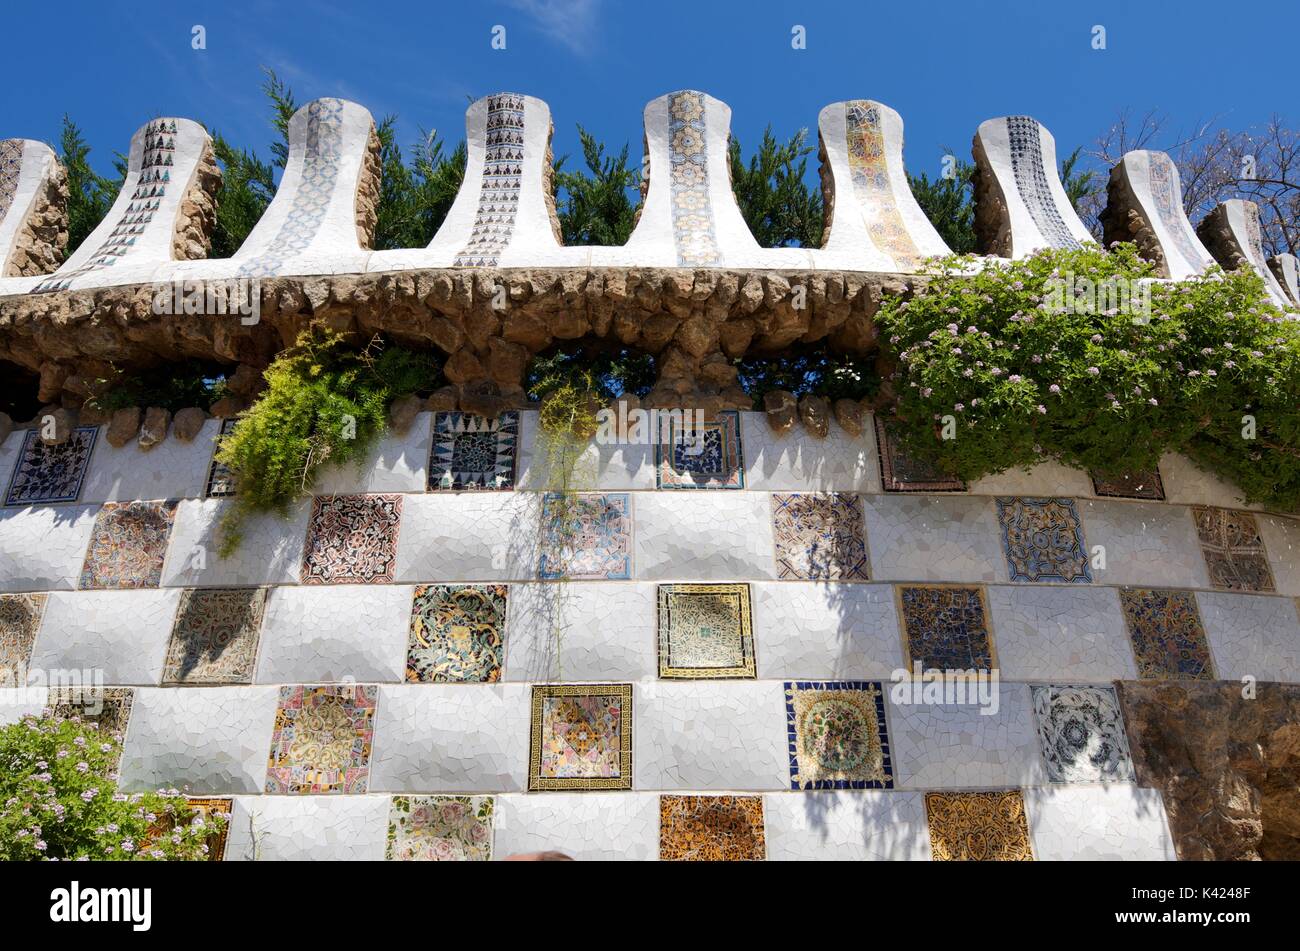 Barcelona, Spanien - 1. Mai 2012: Keramische Wand Mosaik in der Park Güell. Durch Künstler Antonio Gaudí entworfen, ist eines der am meisten besuchten Orte in Barcelona. Stockfoto